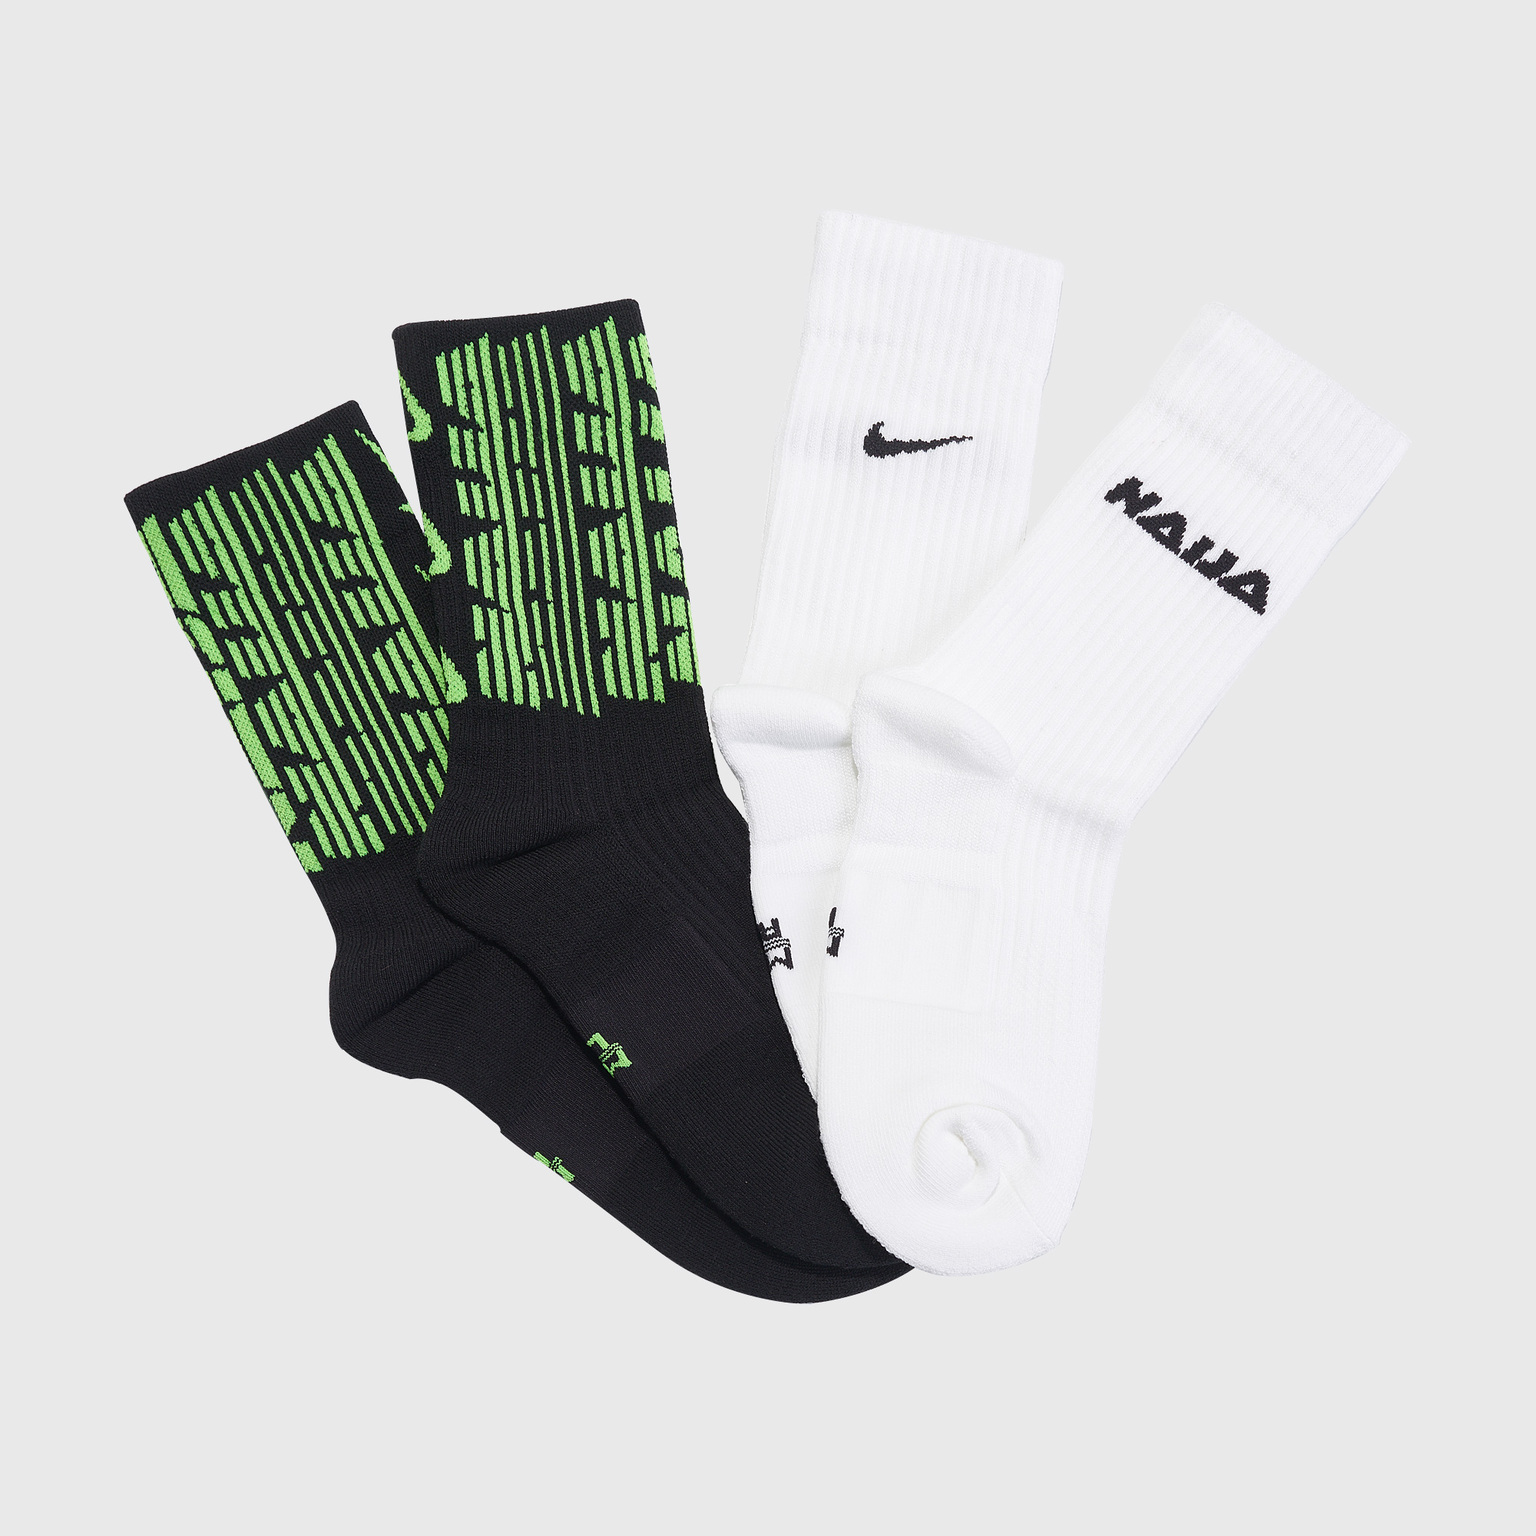 Комплект носков (2 пары) Nike сборной Нигерии CU7197-902